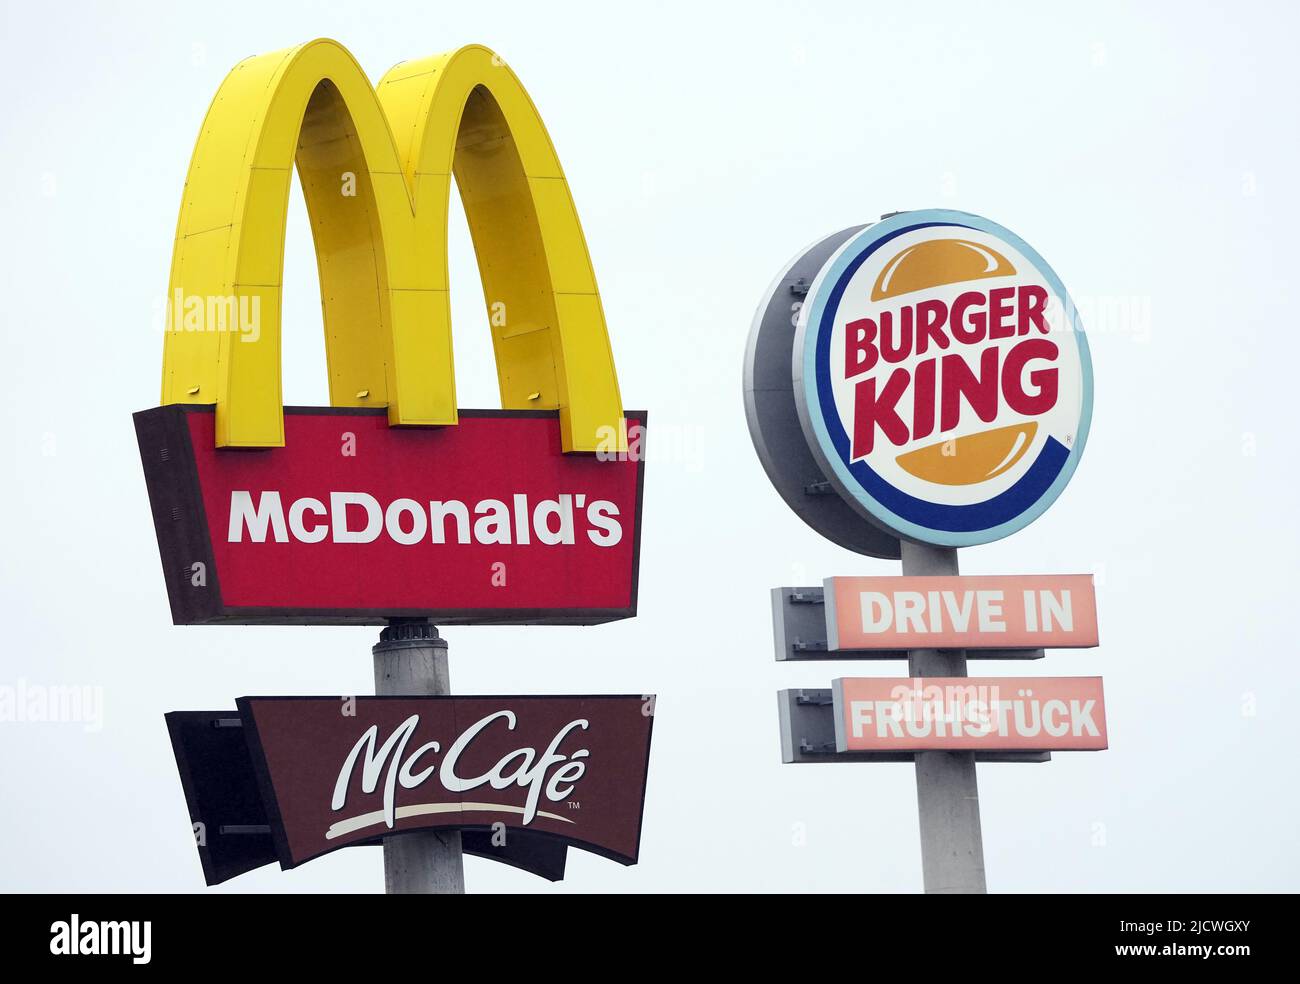 Allemagne. 30th avril 2022. Les logos de McDonald's et McCafe ainsi que Burger King se trouvent à côté des restaurants rapides respectifs, à un arrêt de repos sur l'autoroute. Crédit : Soeren Stache/dpa/Alay Live News Banque D'Images